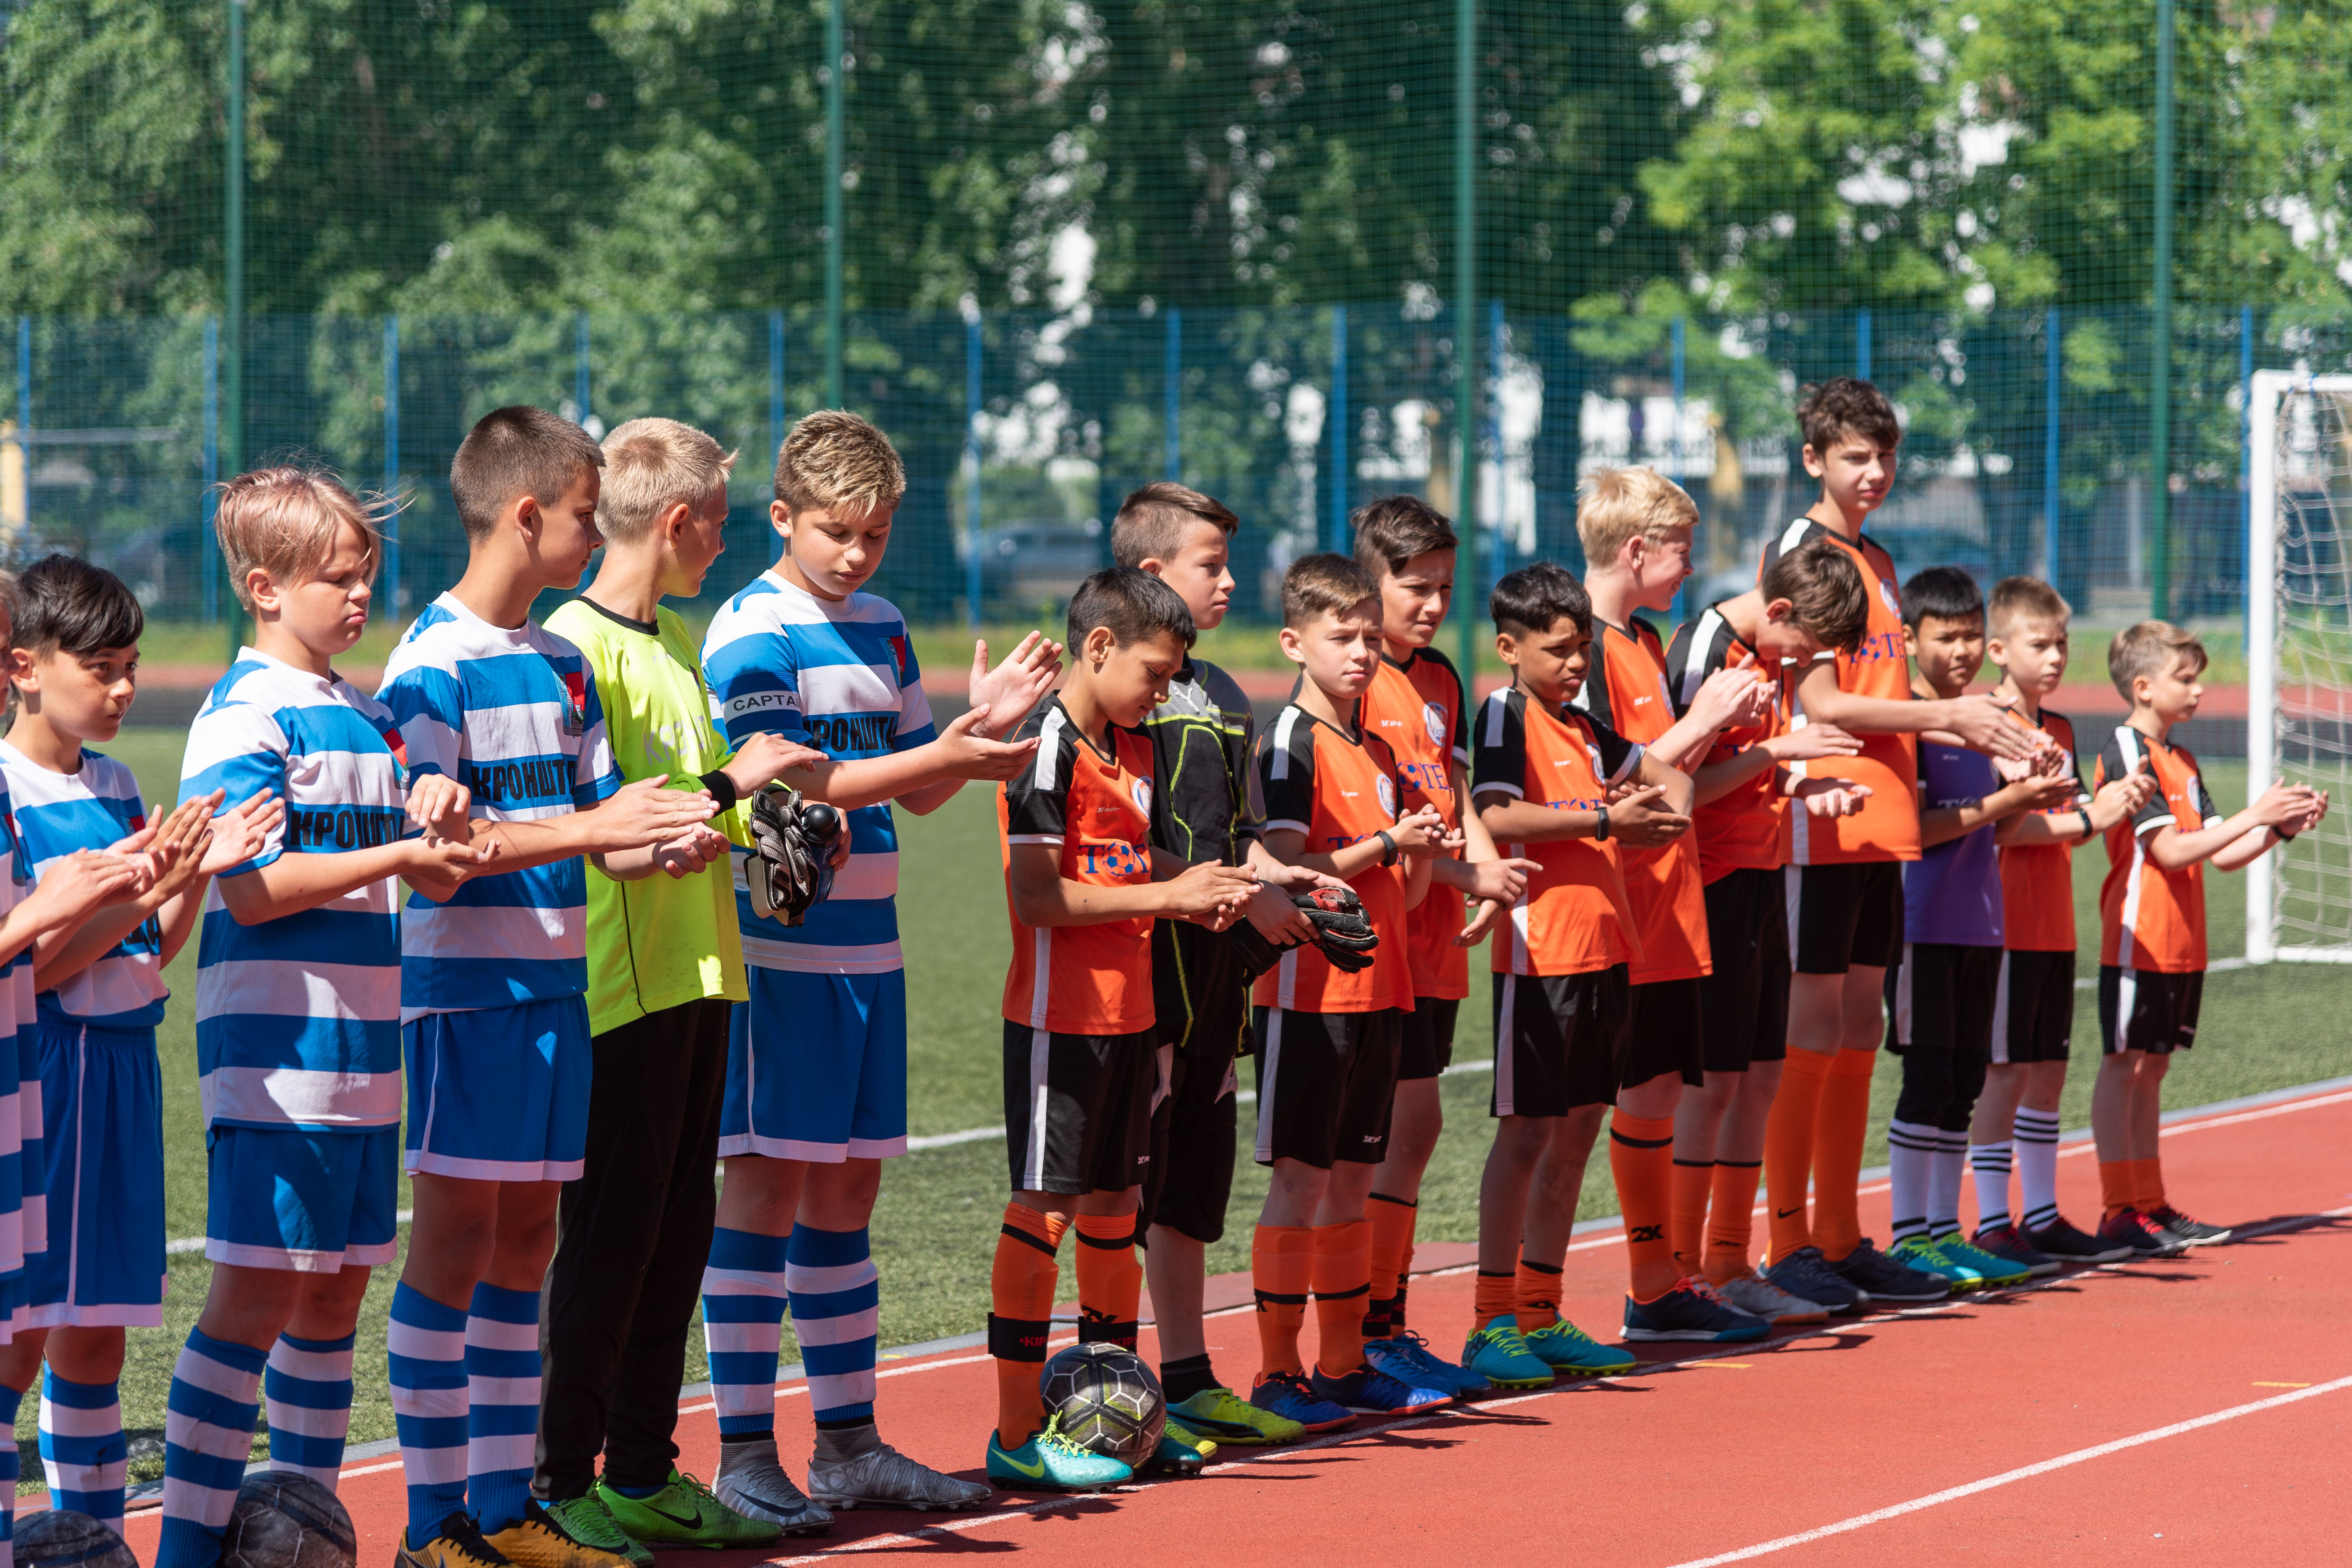 ФК «Тотем» провёл товарищеский матч с командой Санкт-Петербурга